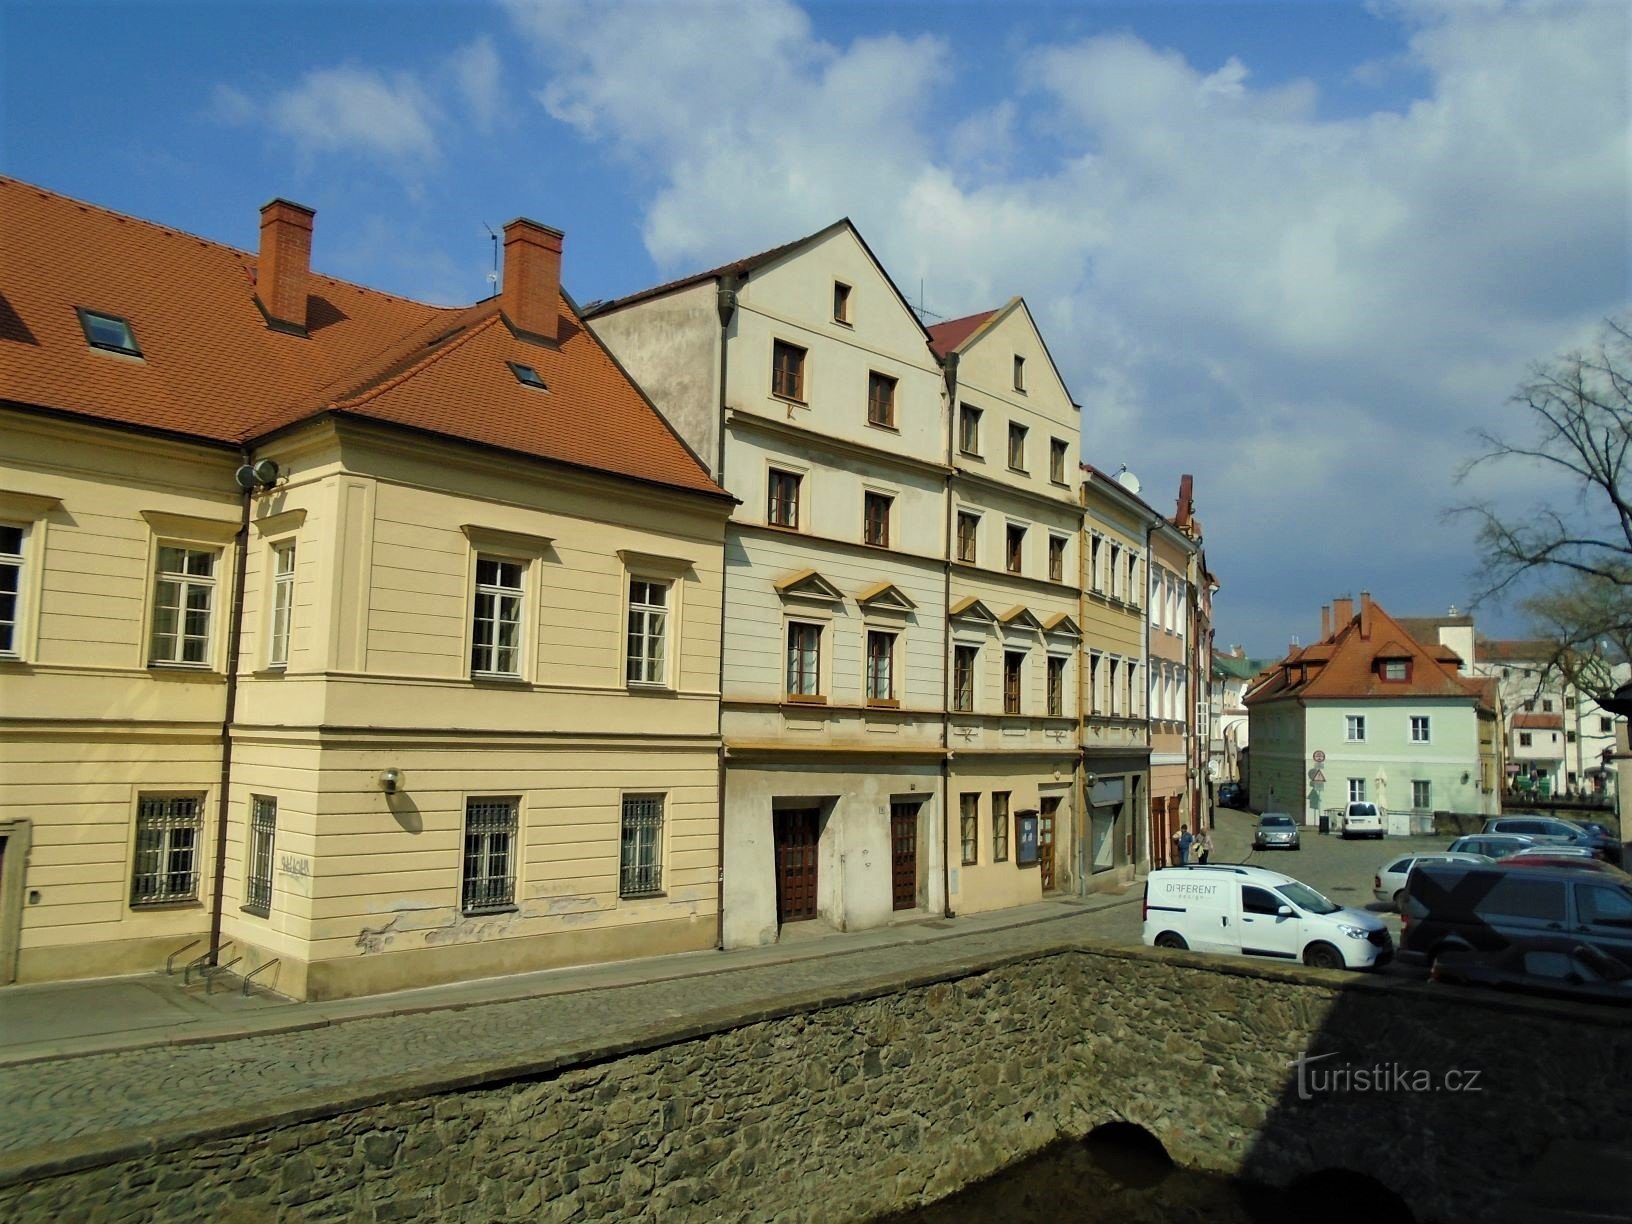 Kostelní gaden fra Struha (Pardubice, 17.4.2018/XNUMX/XNUMX)